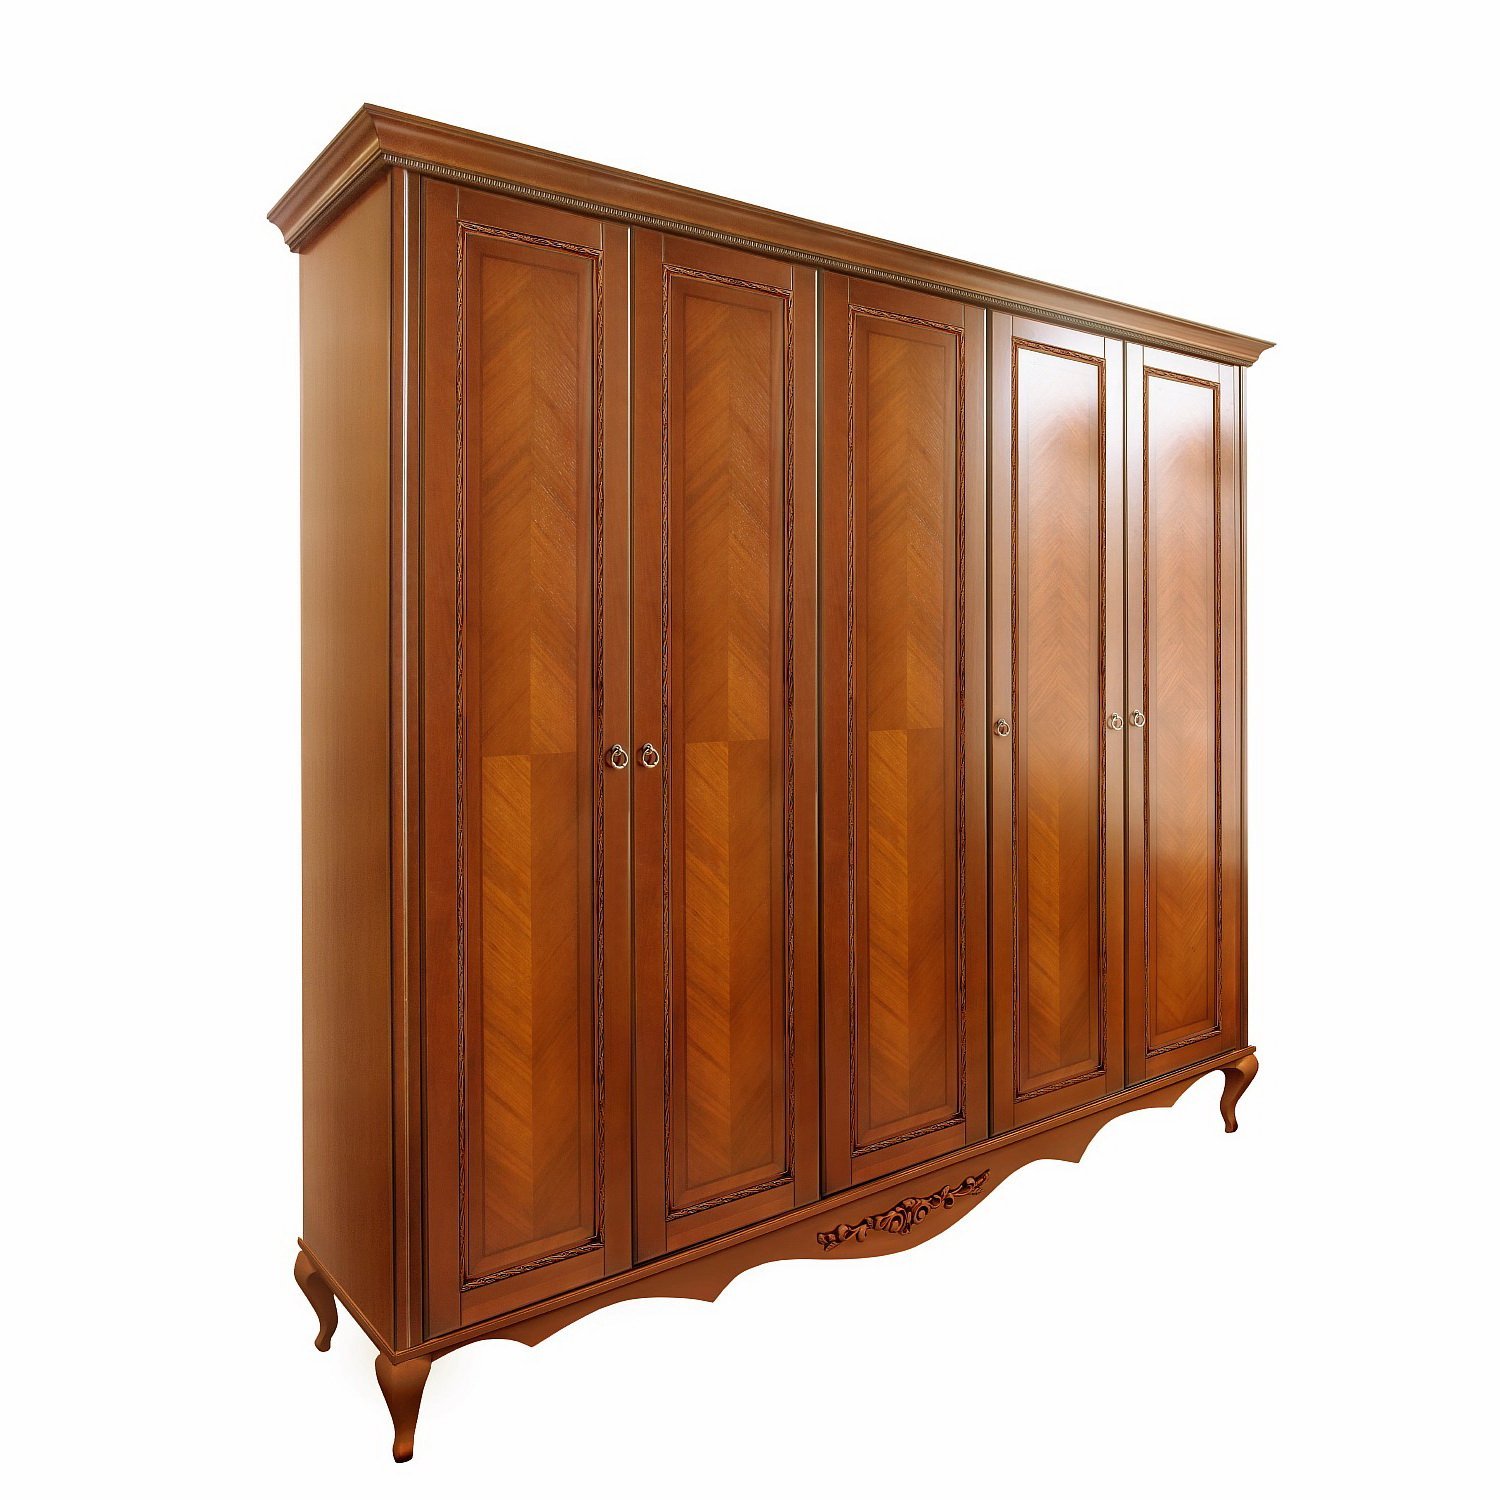 Шкаф платяной Timber Неаполь, 5-ти дверный 249x65x227 см цвет: янтарь (T-525Д)T-525Д